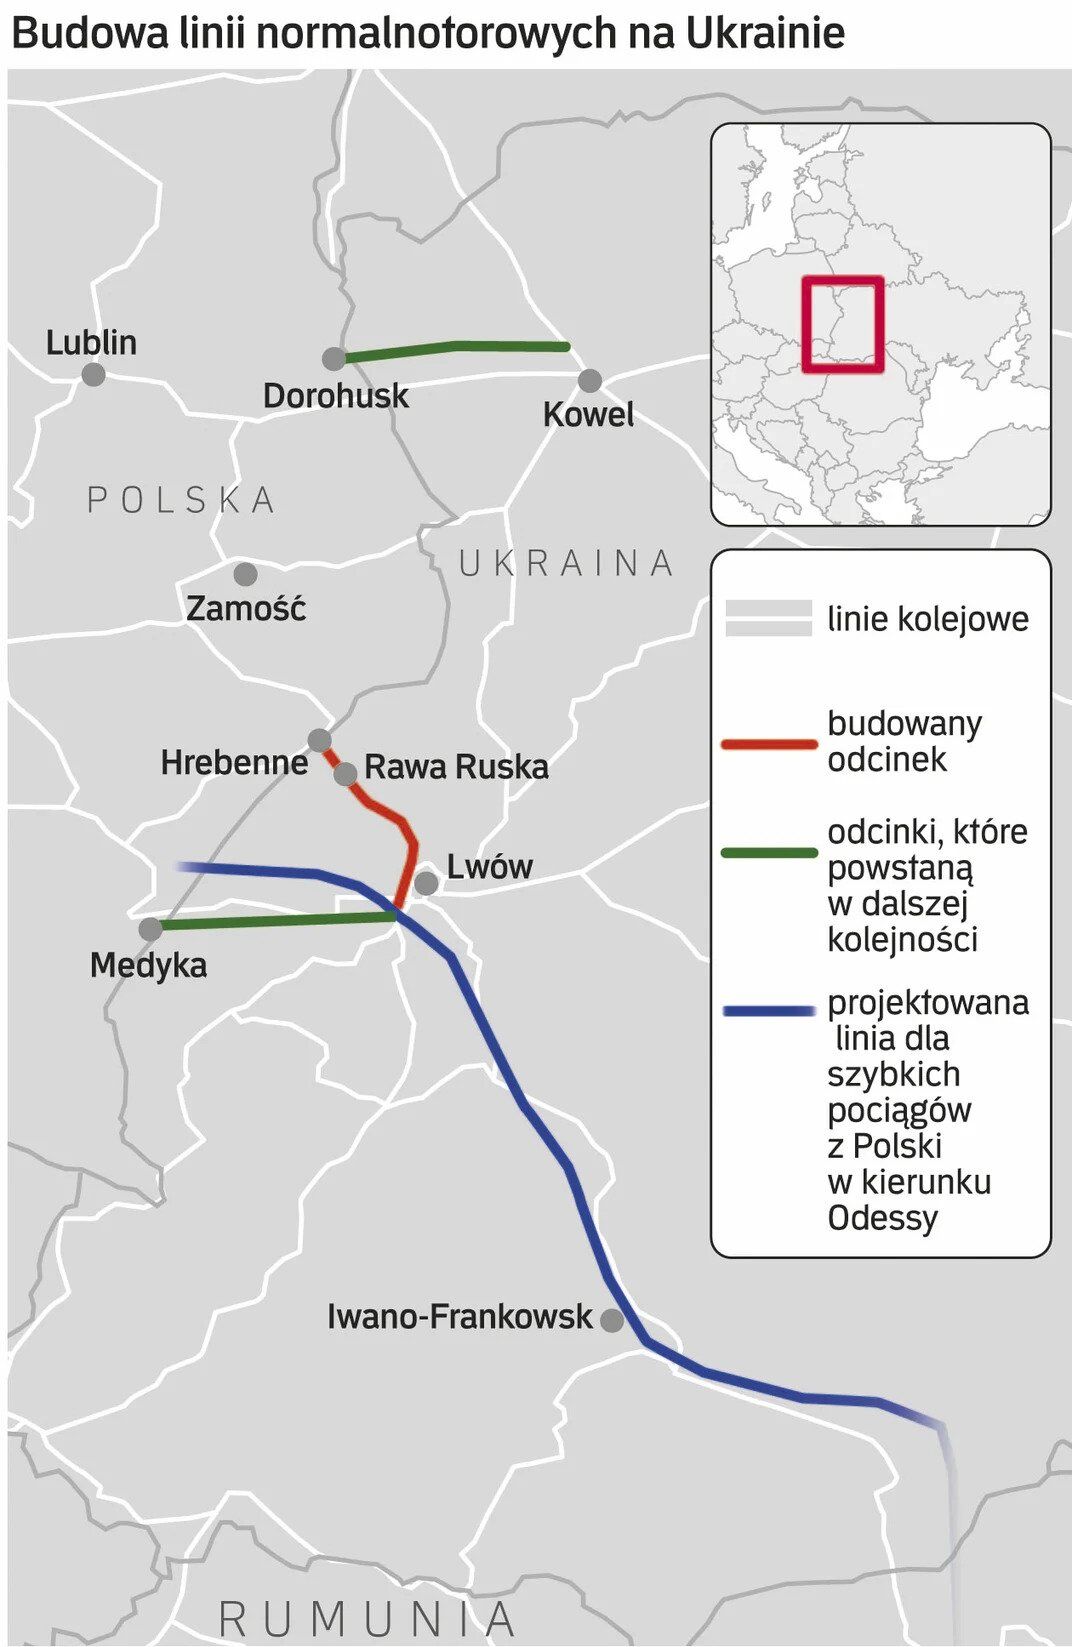 УЗ хочет построить европути из Украины в Польшу